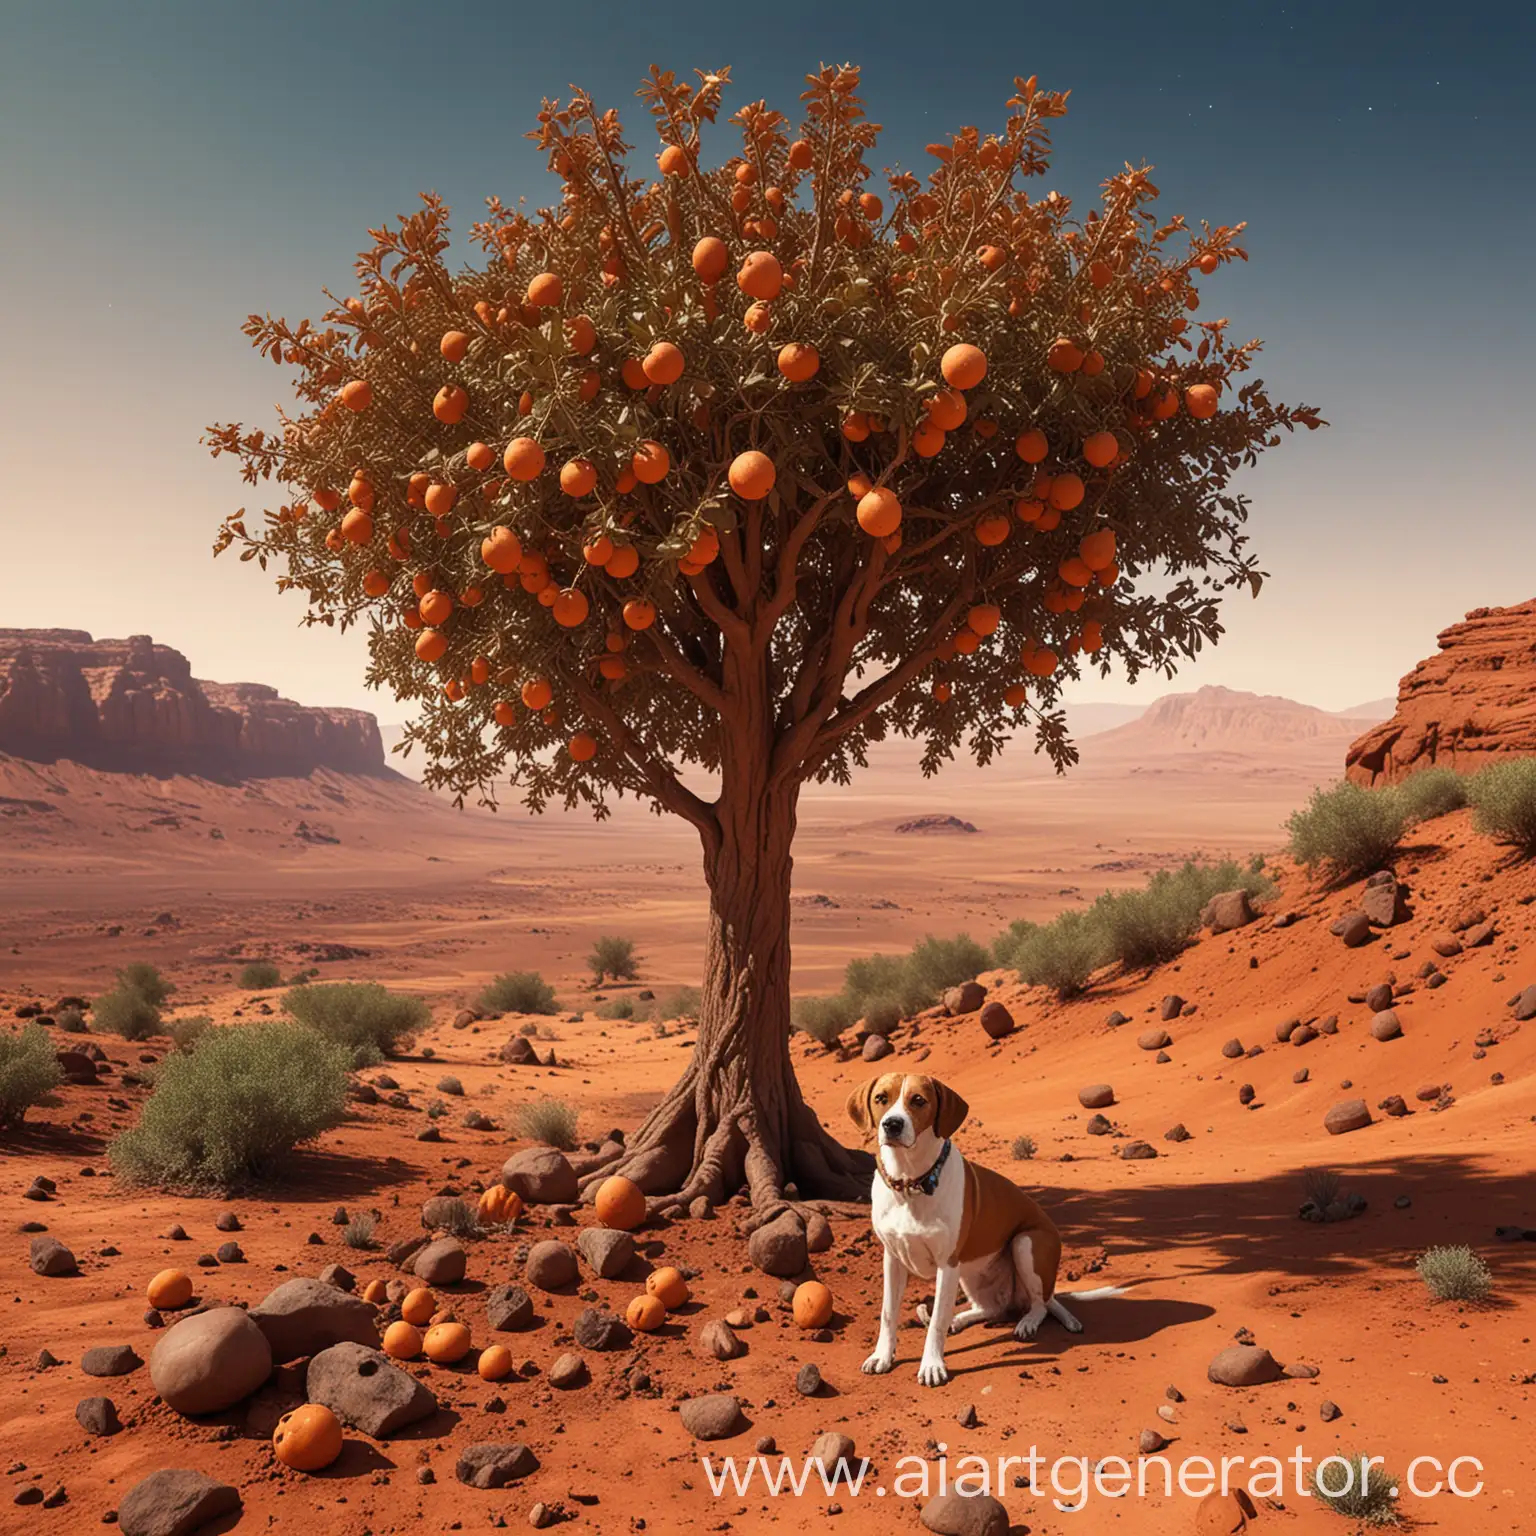 кратор планеты Марс, ракета Дерево с плодами, охотничья собака